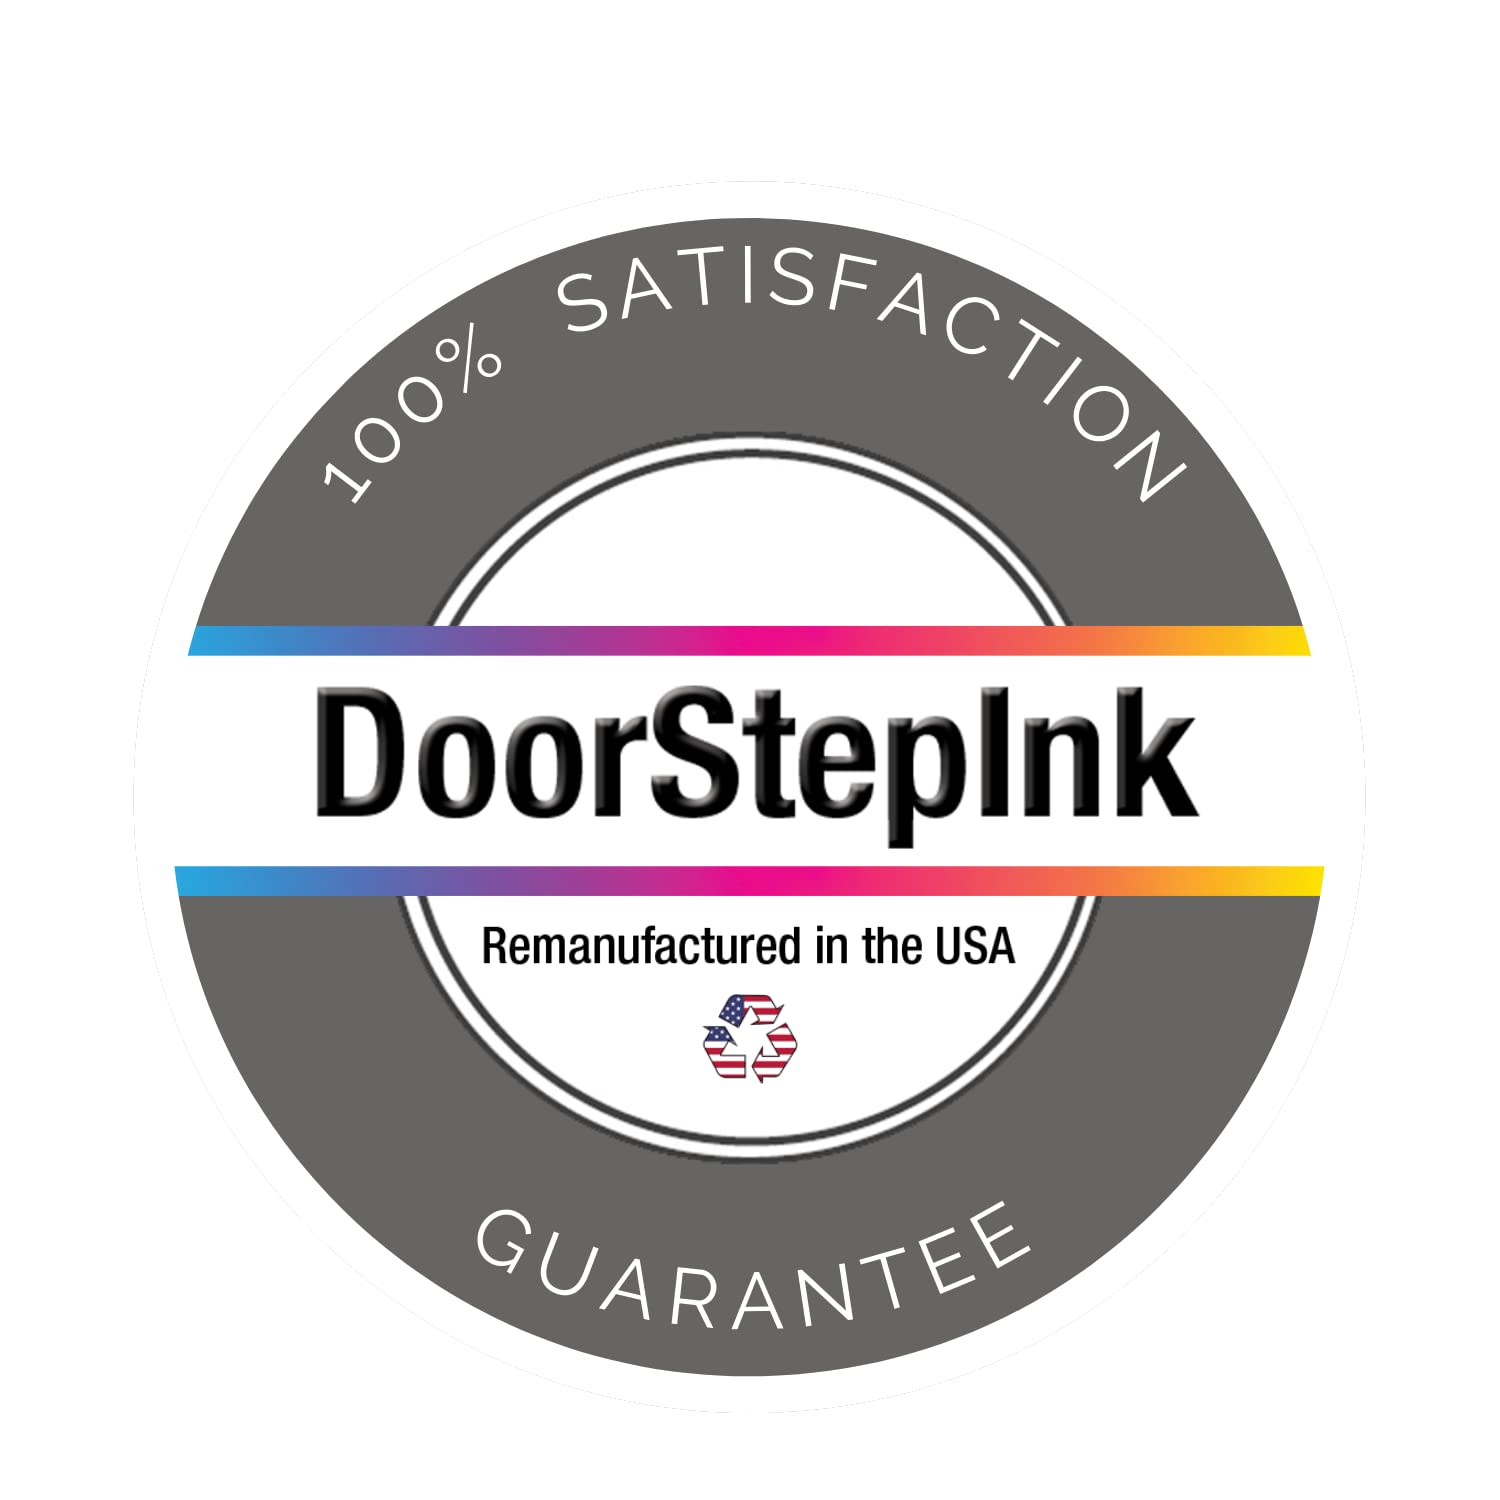 Door Step Ink